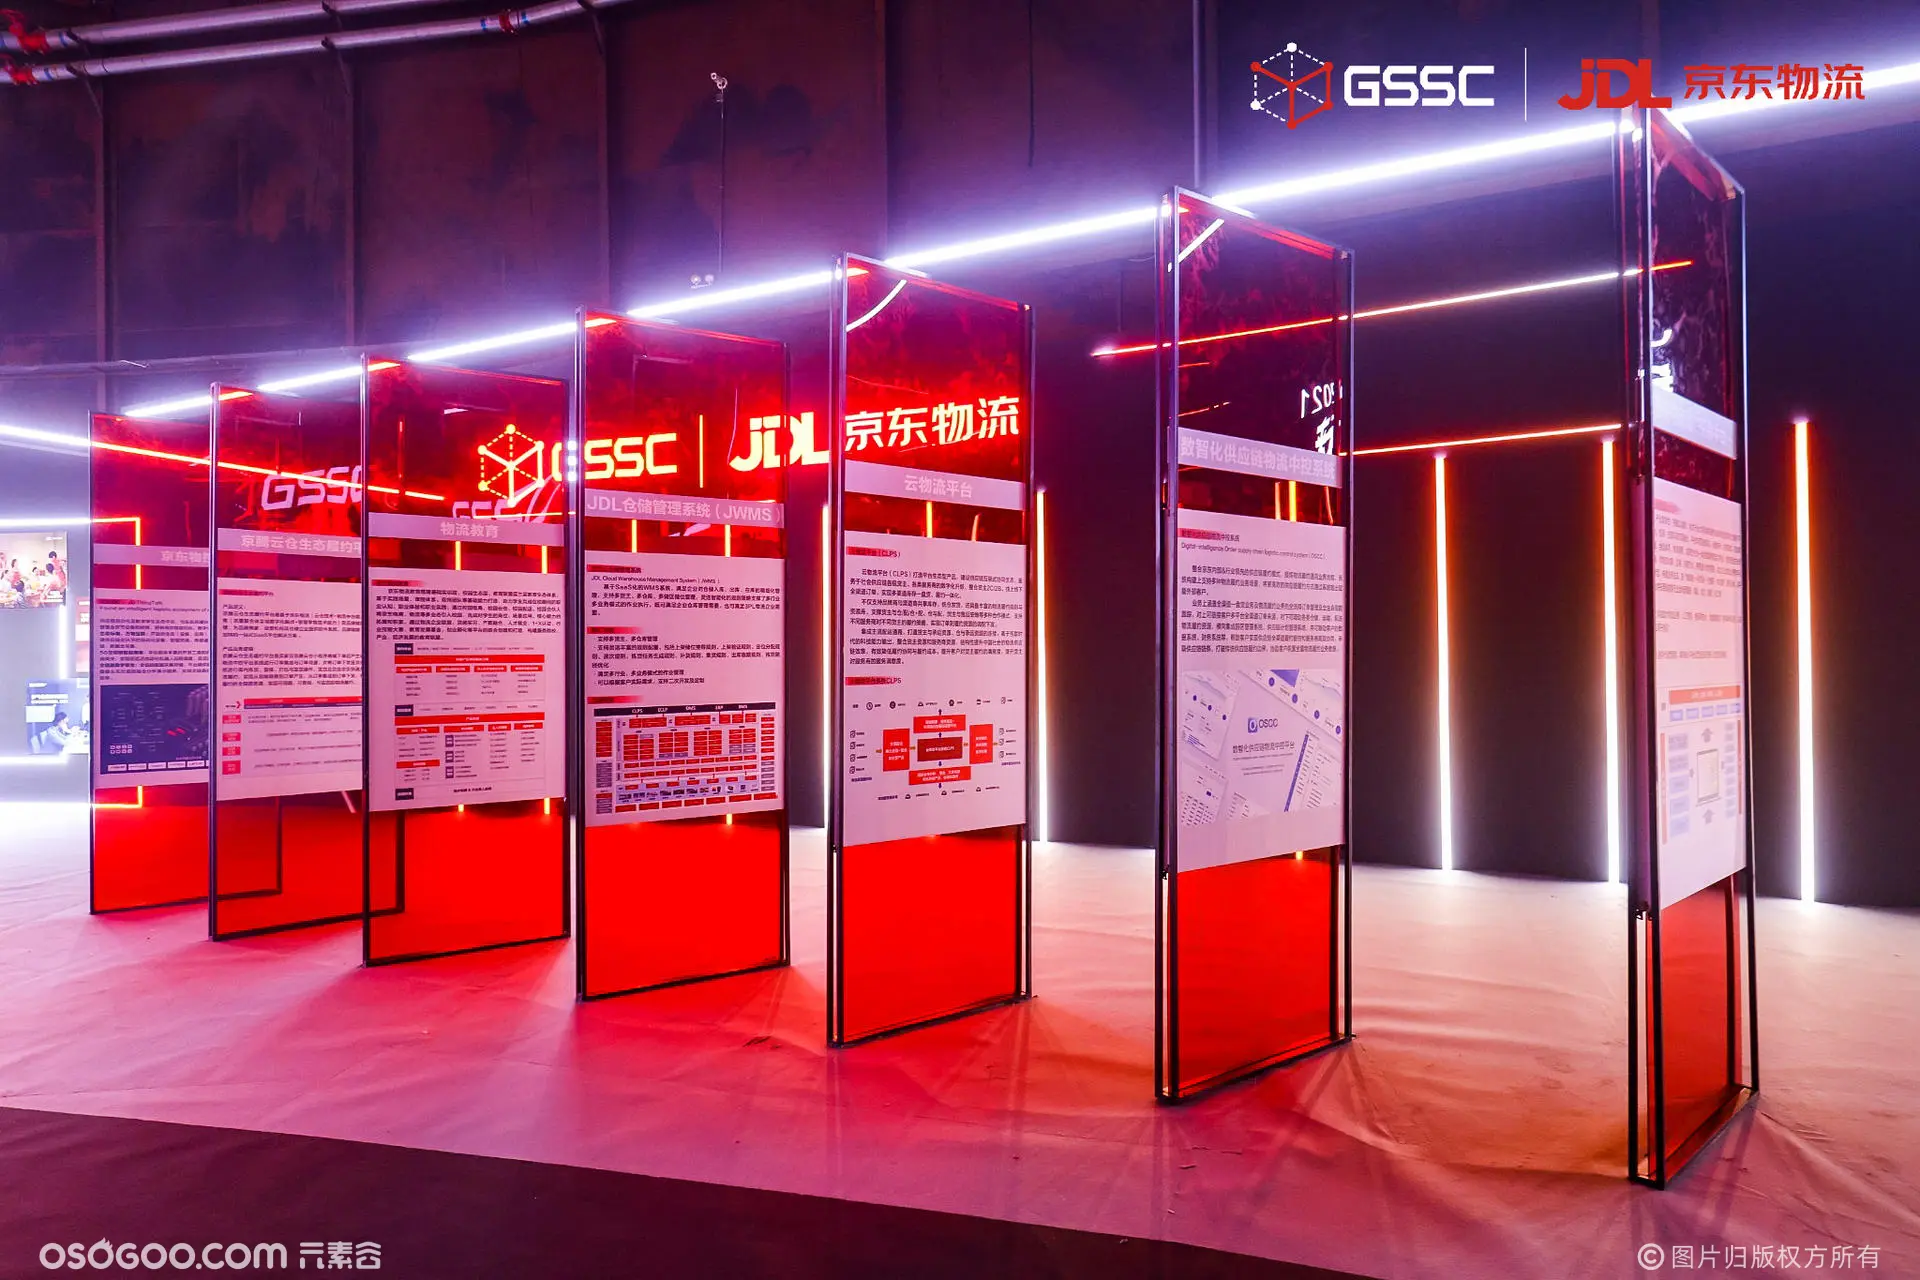 GSSC 2021全球智能物流峰会